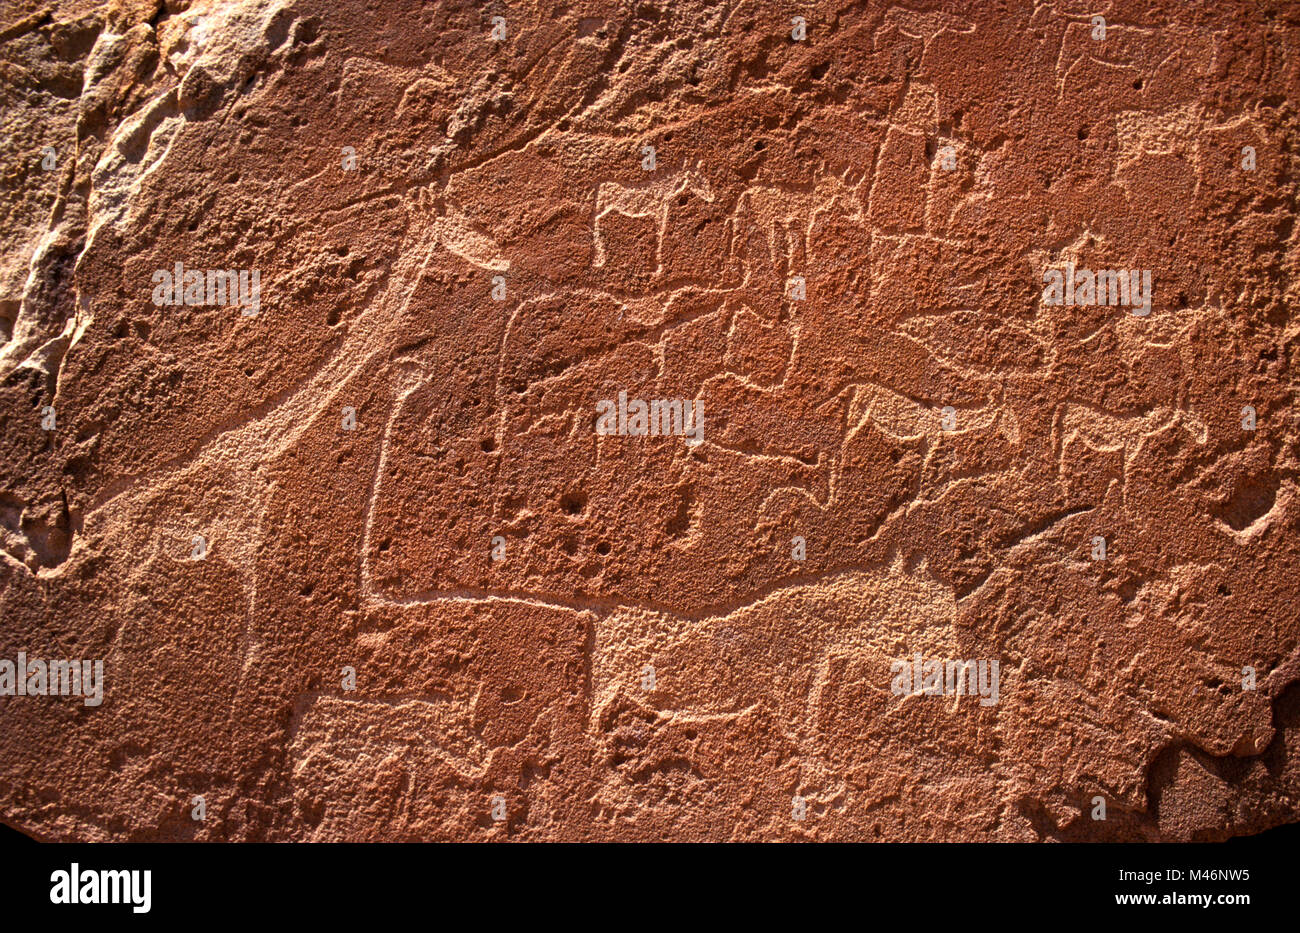 Namibia. Damaraland. Twyfelfontein. Eine der größten bekannten Sammlungen von Rock Art Gravuren in Afrika (über 6000 Jahre alt). Unesco Welterbe S Stockfoto